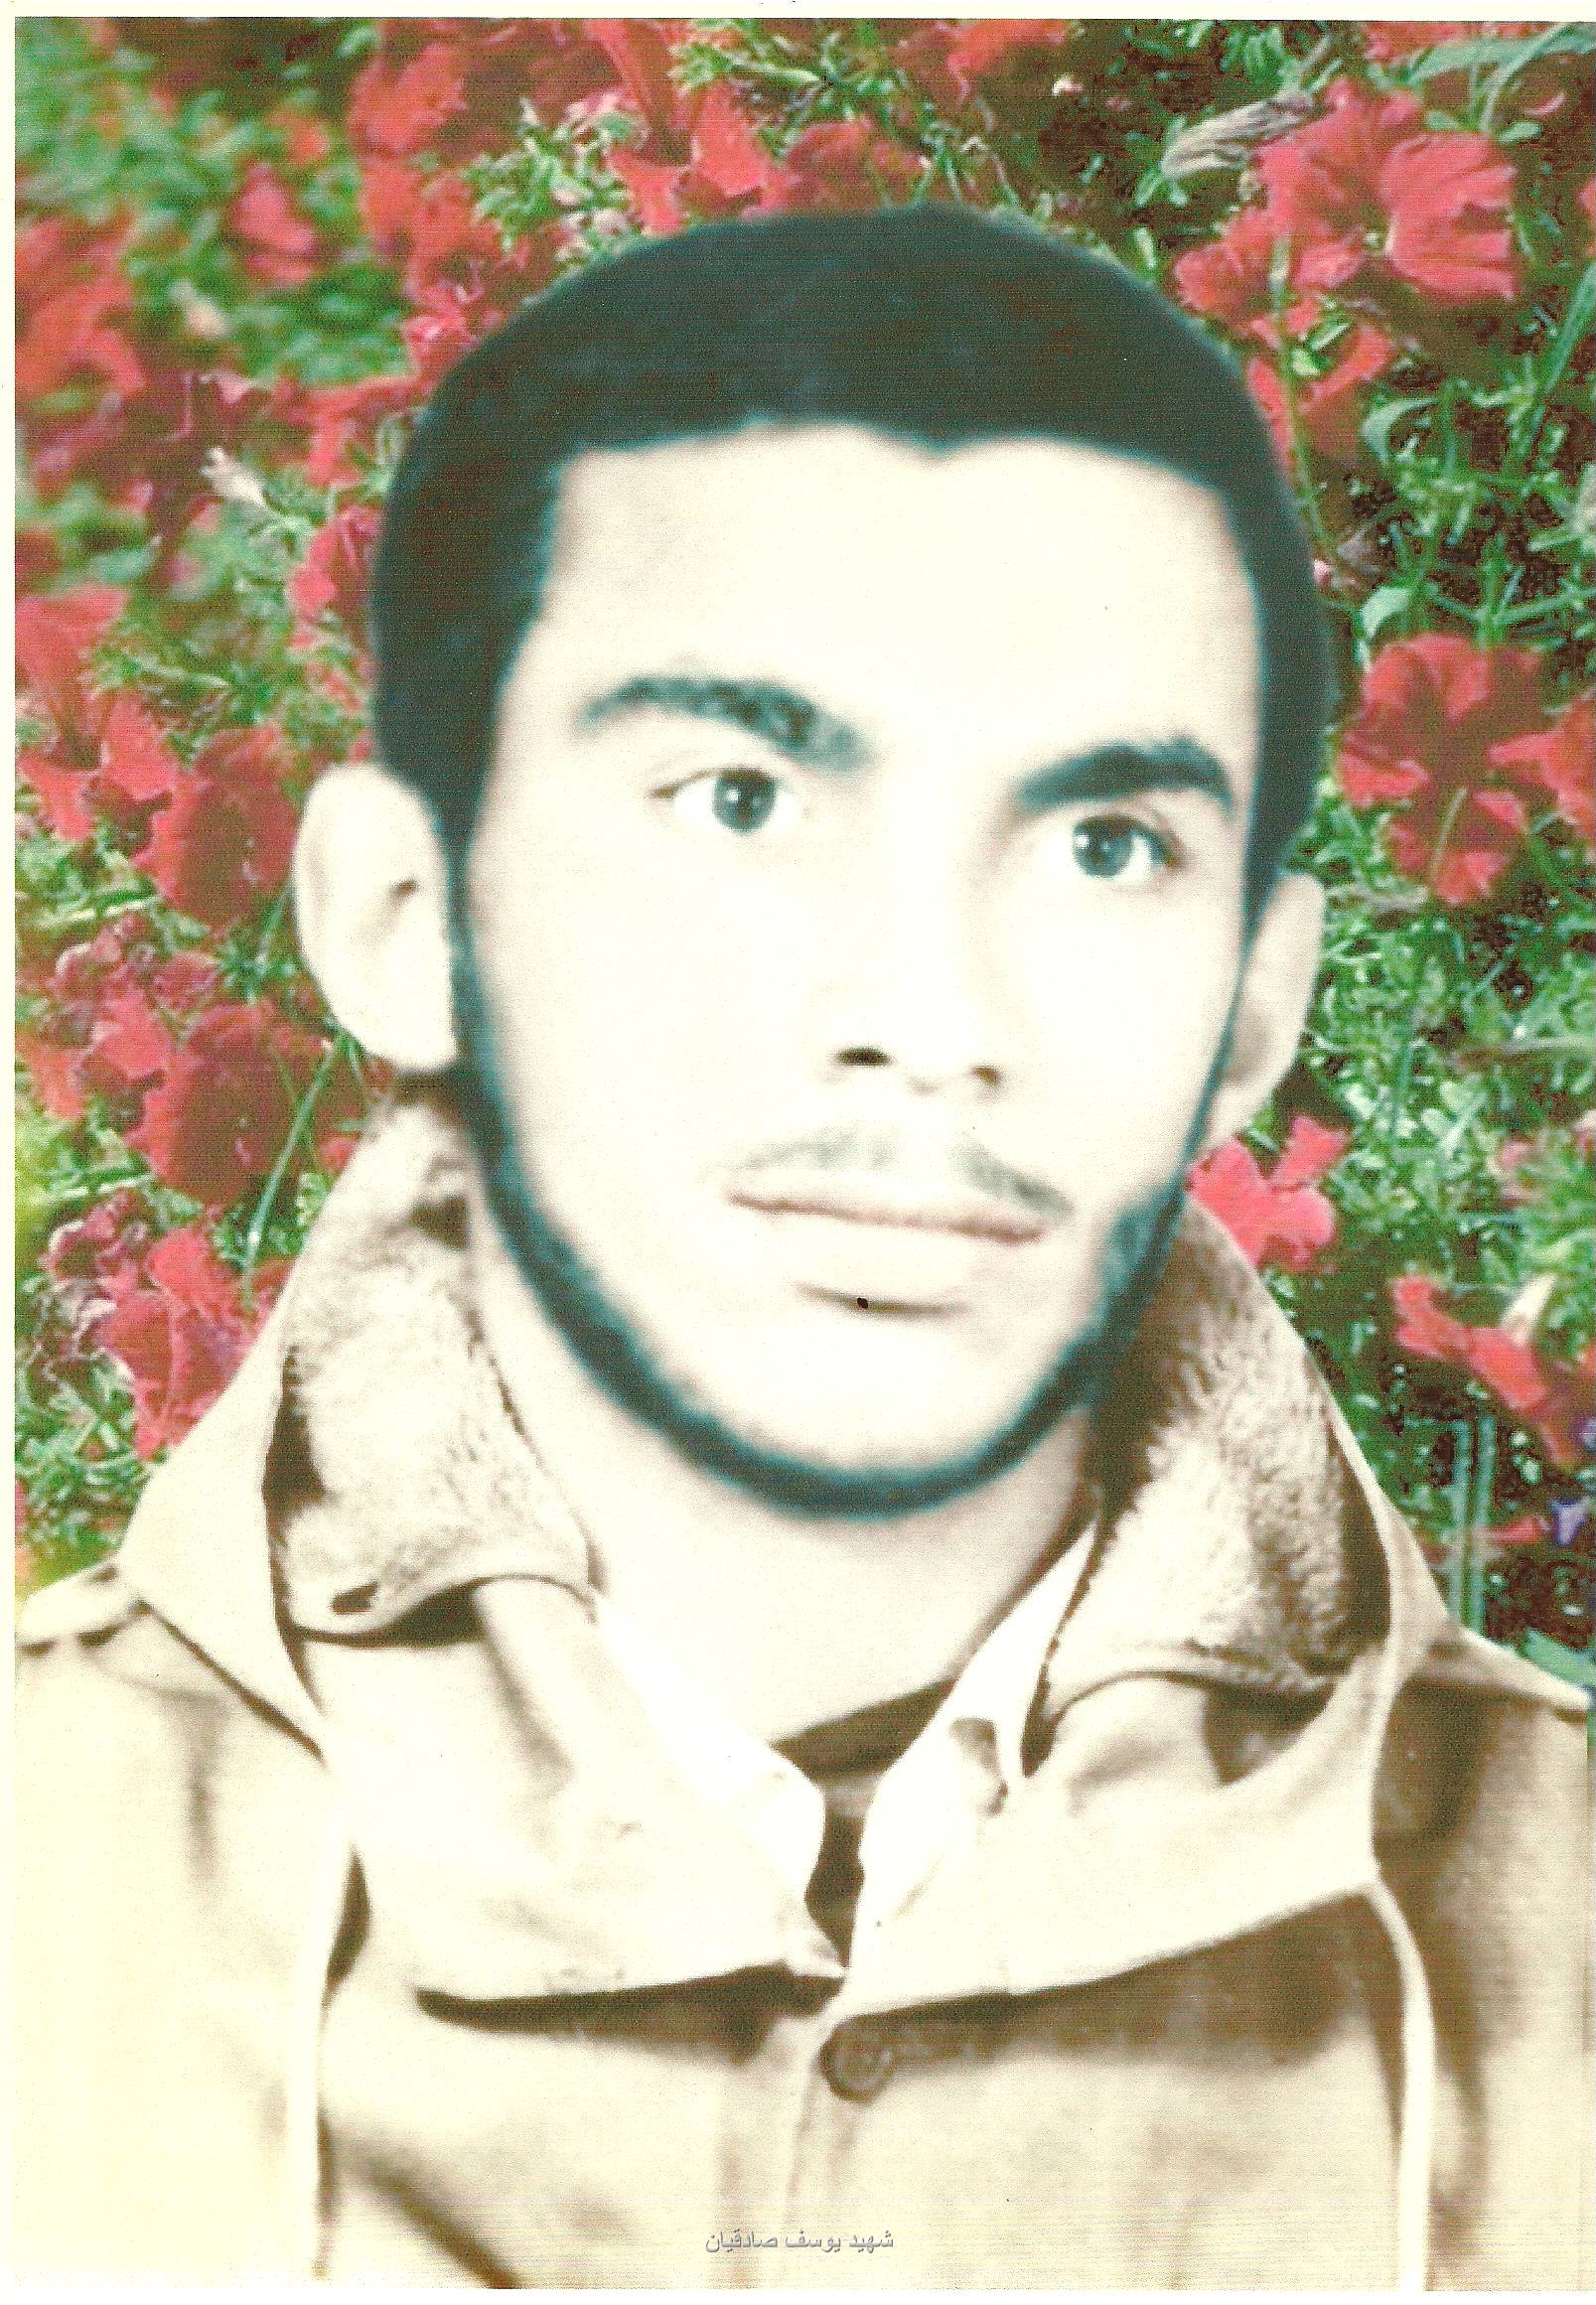 وبلاگ شهید چهارده سال بعد از انتظار